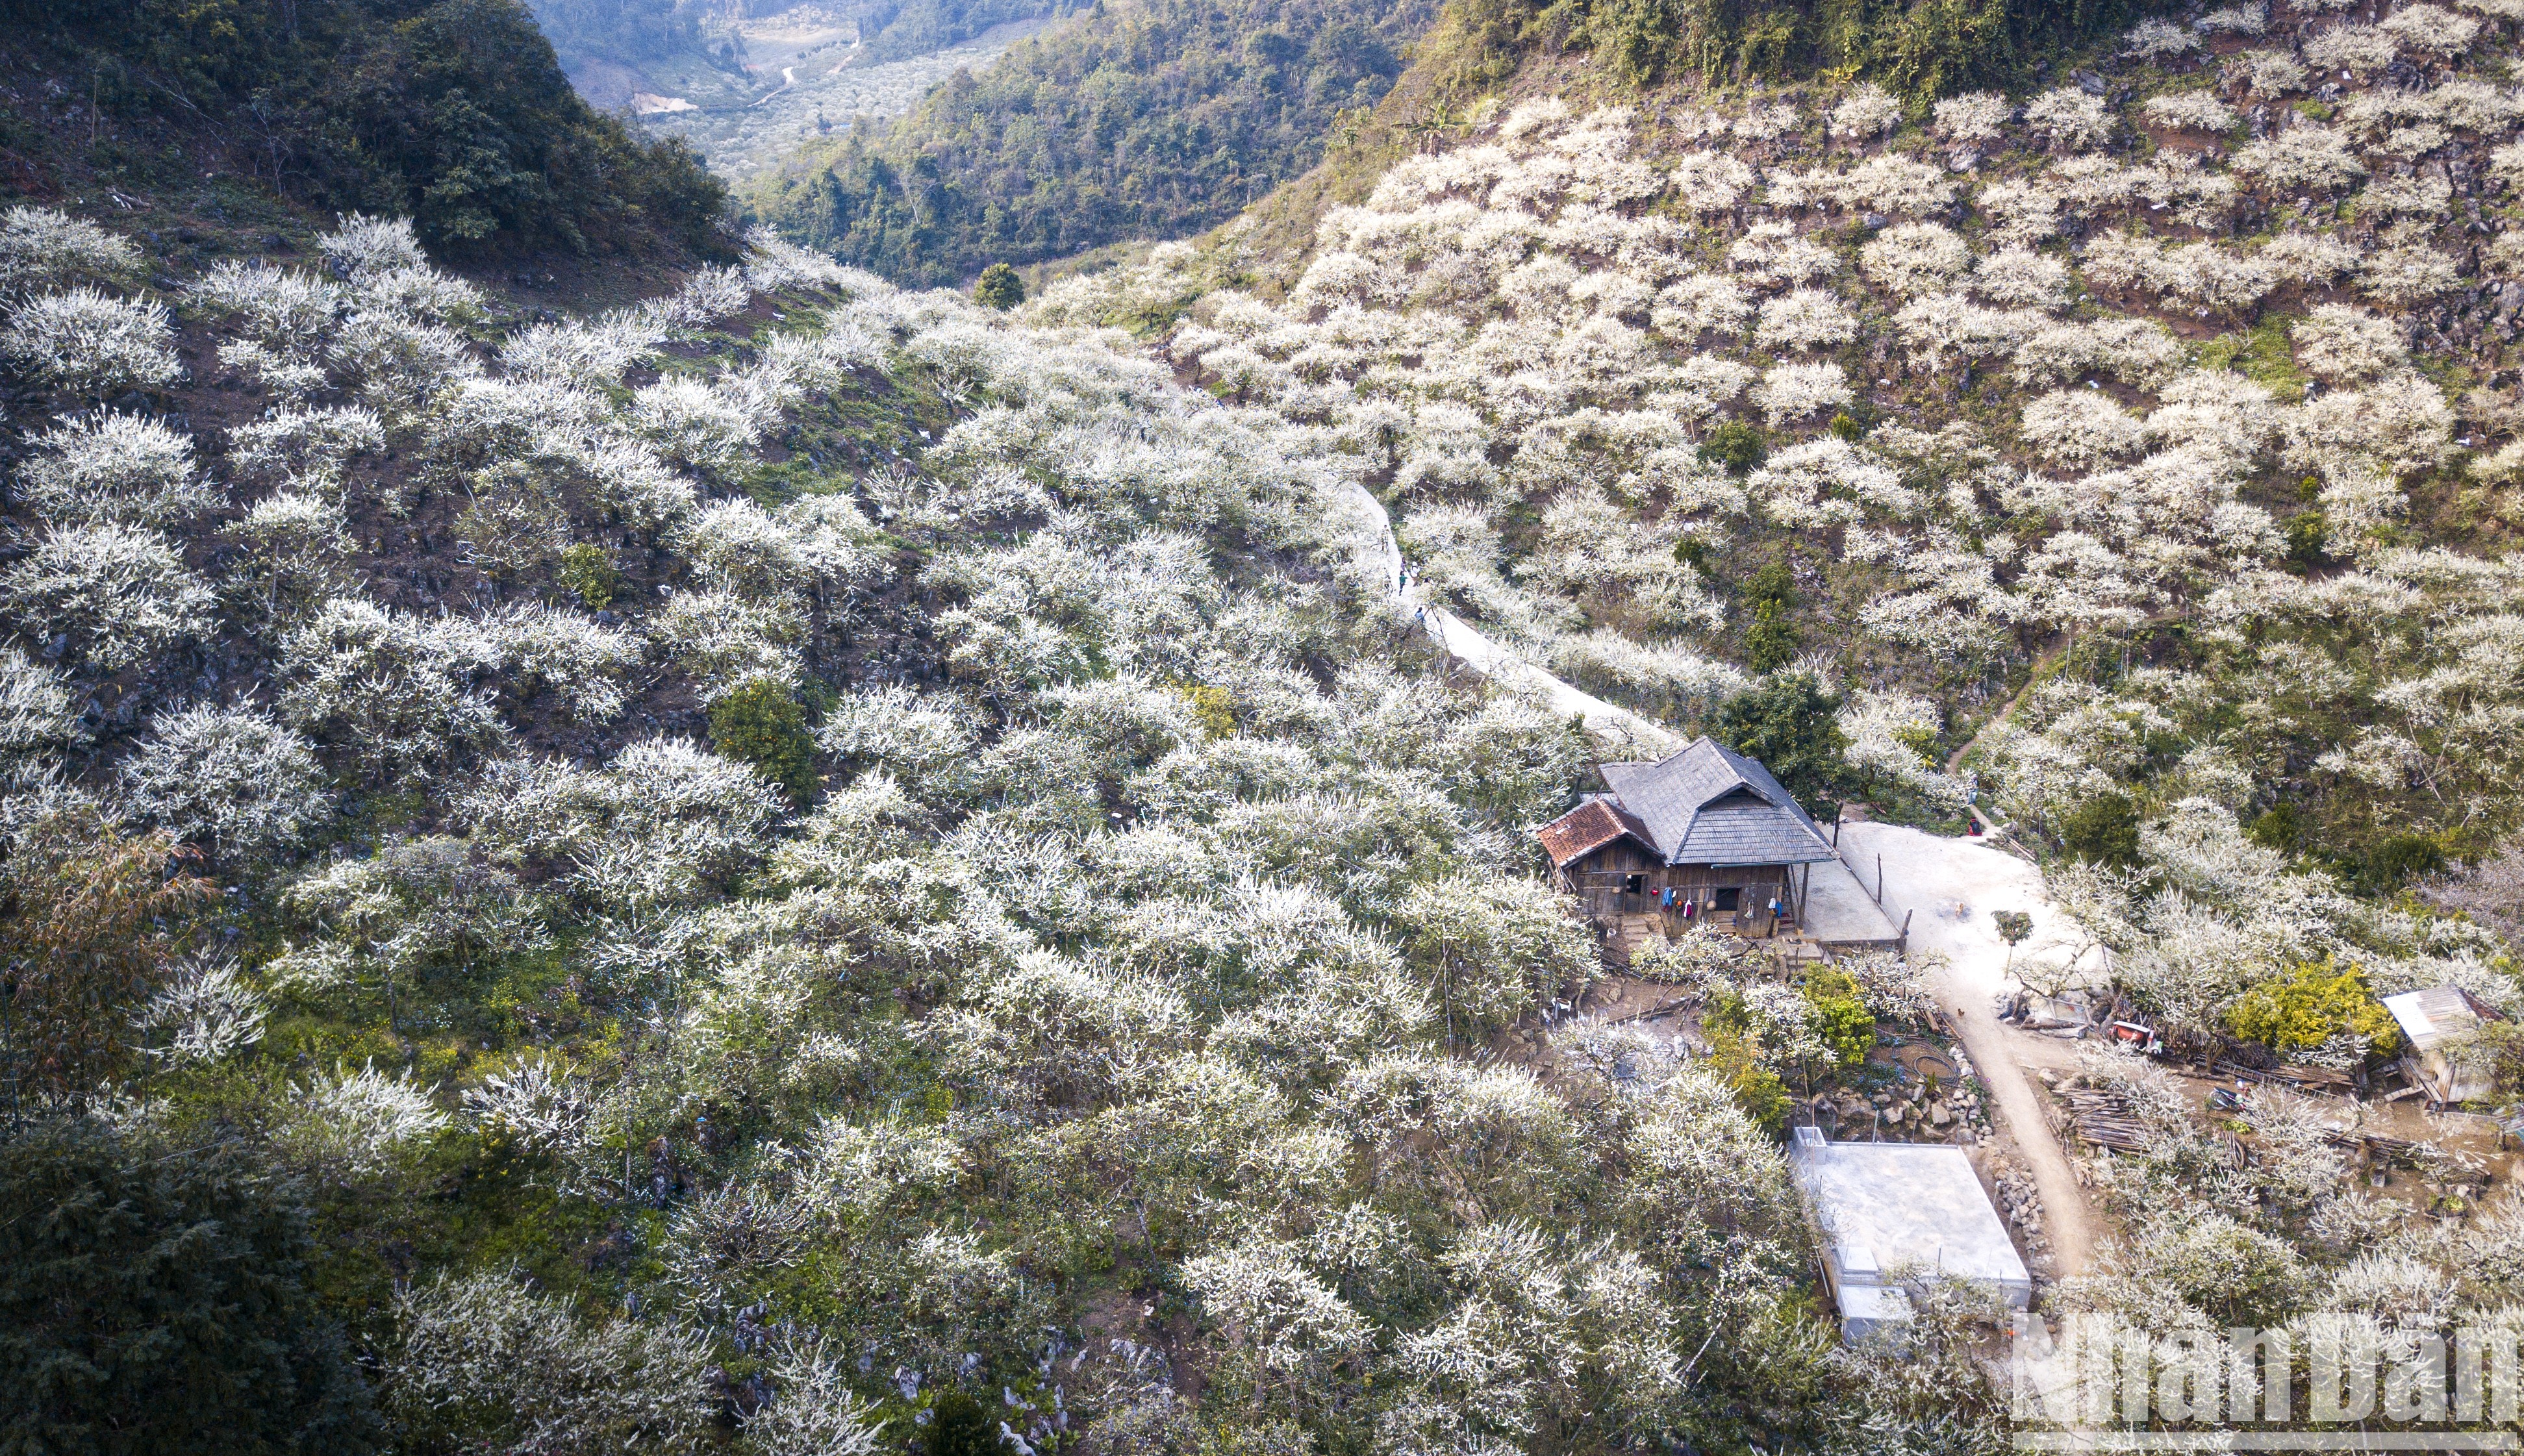 Flores de albaricoque nievan valle vietnamita de Mu Nau